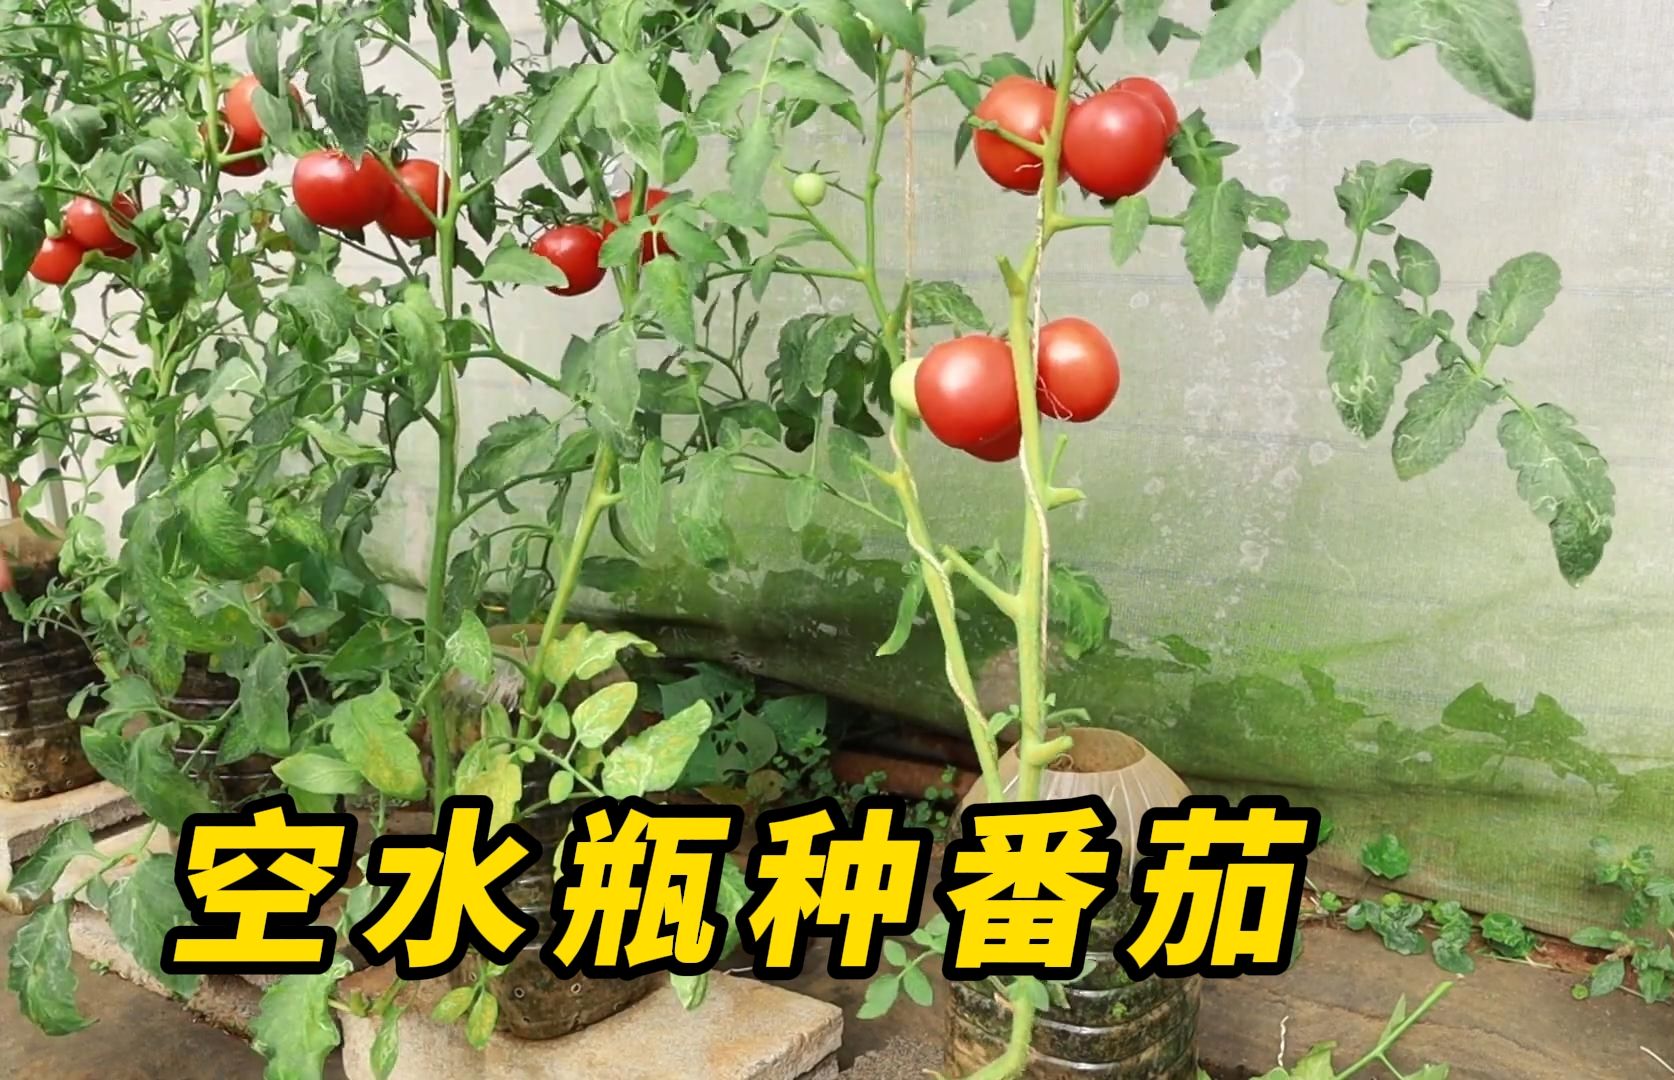 用空水瓶在家种番茄，从育苗到收获全过程，看完视频你也能学会